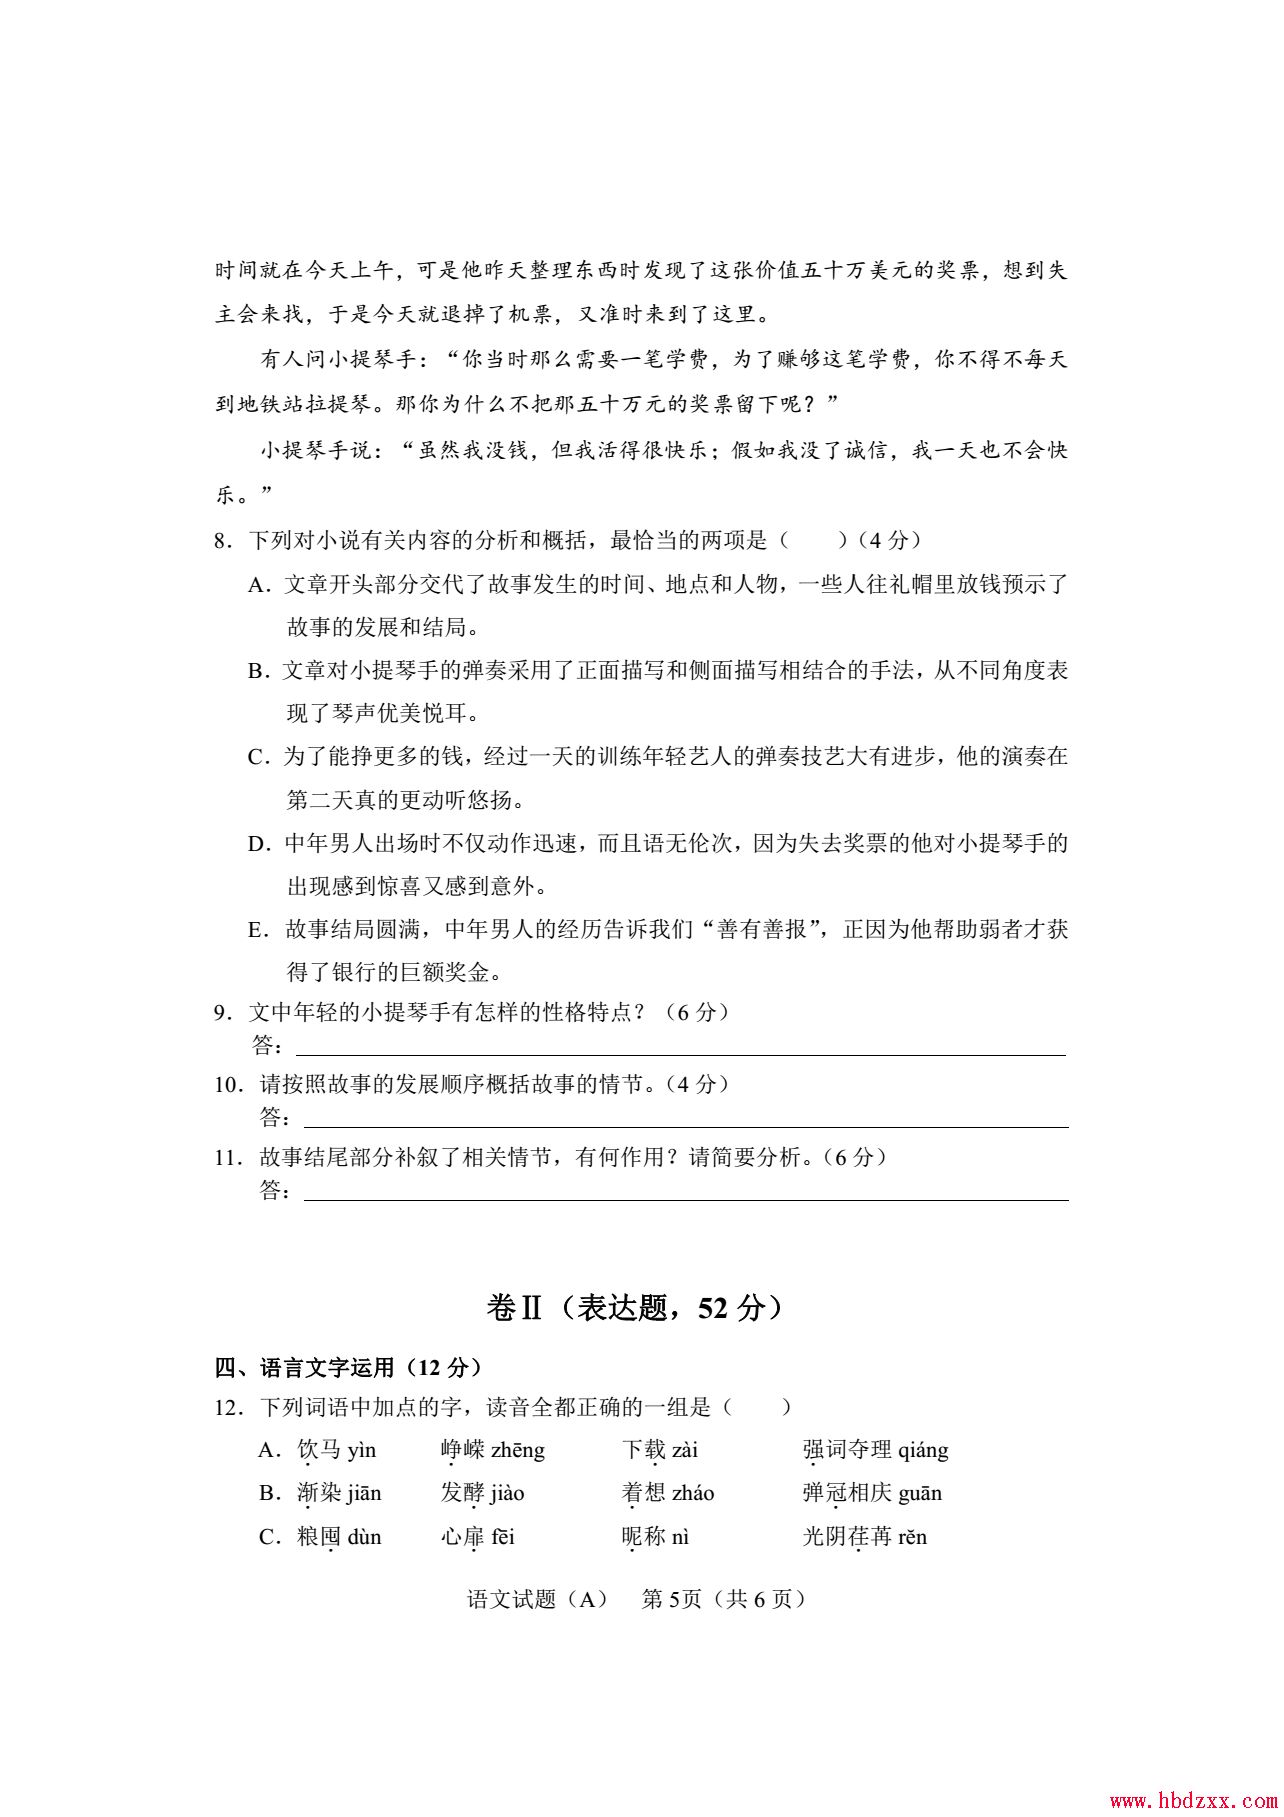 石家庄铁路职业技术学院2013年语文单招试题 图5